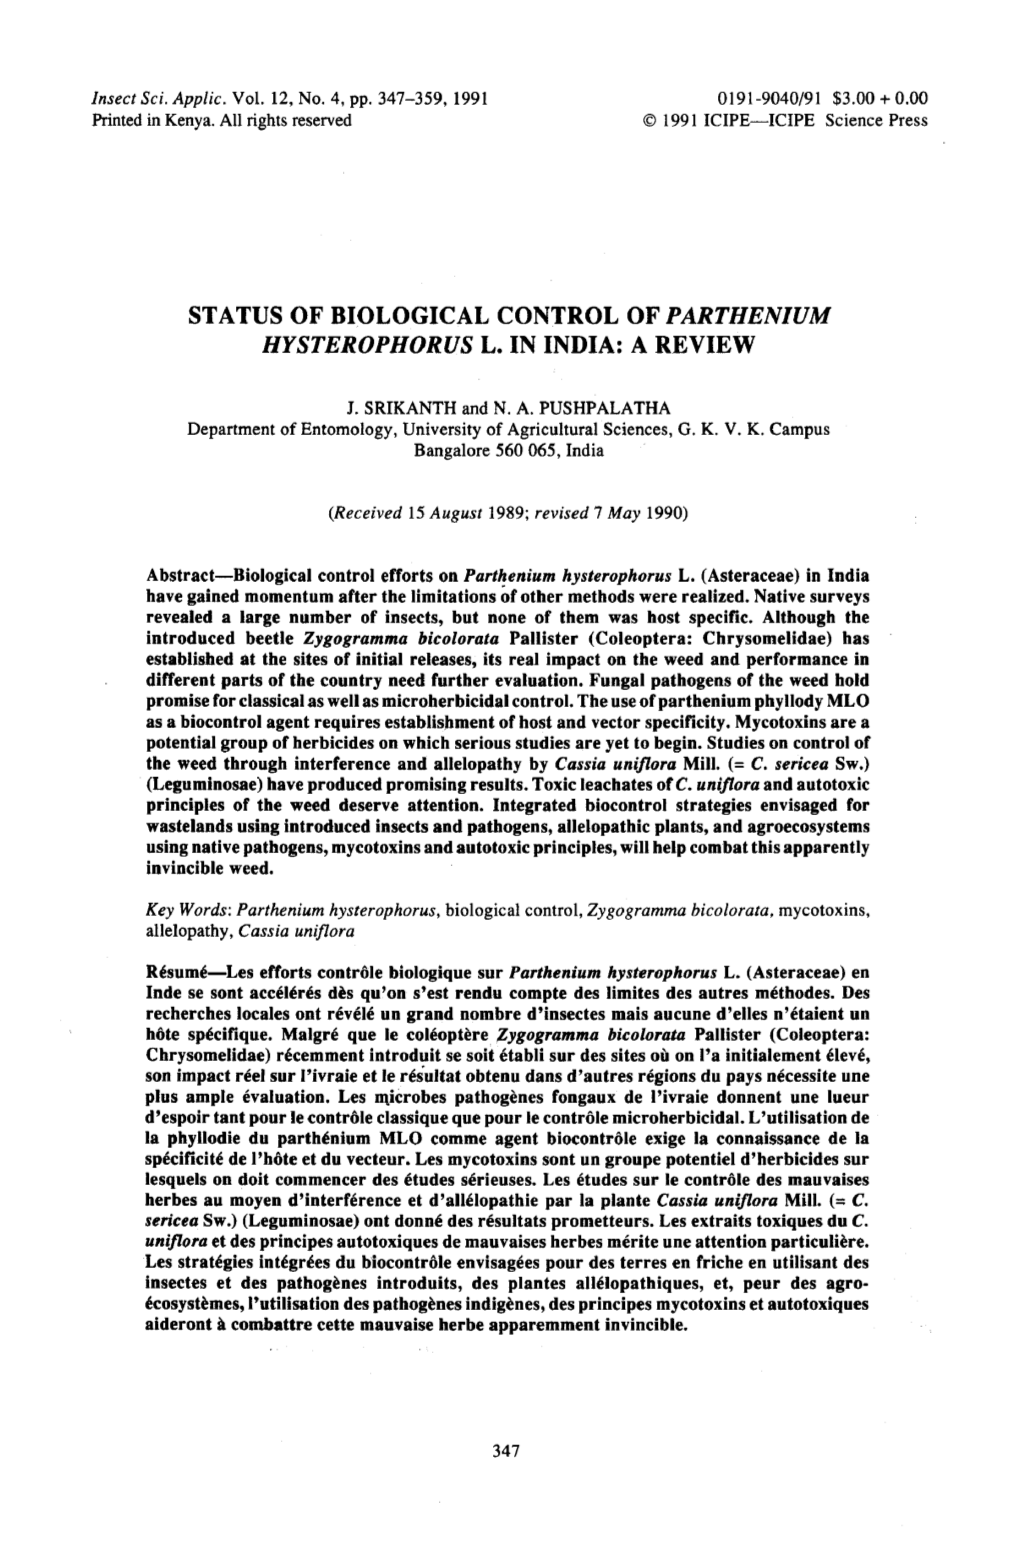 Status of Biological Control of Parthenium Size